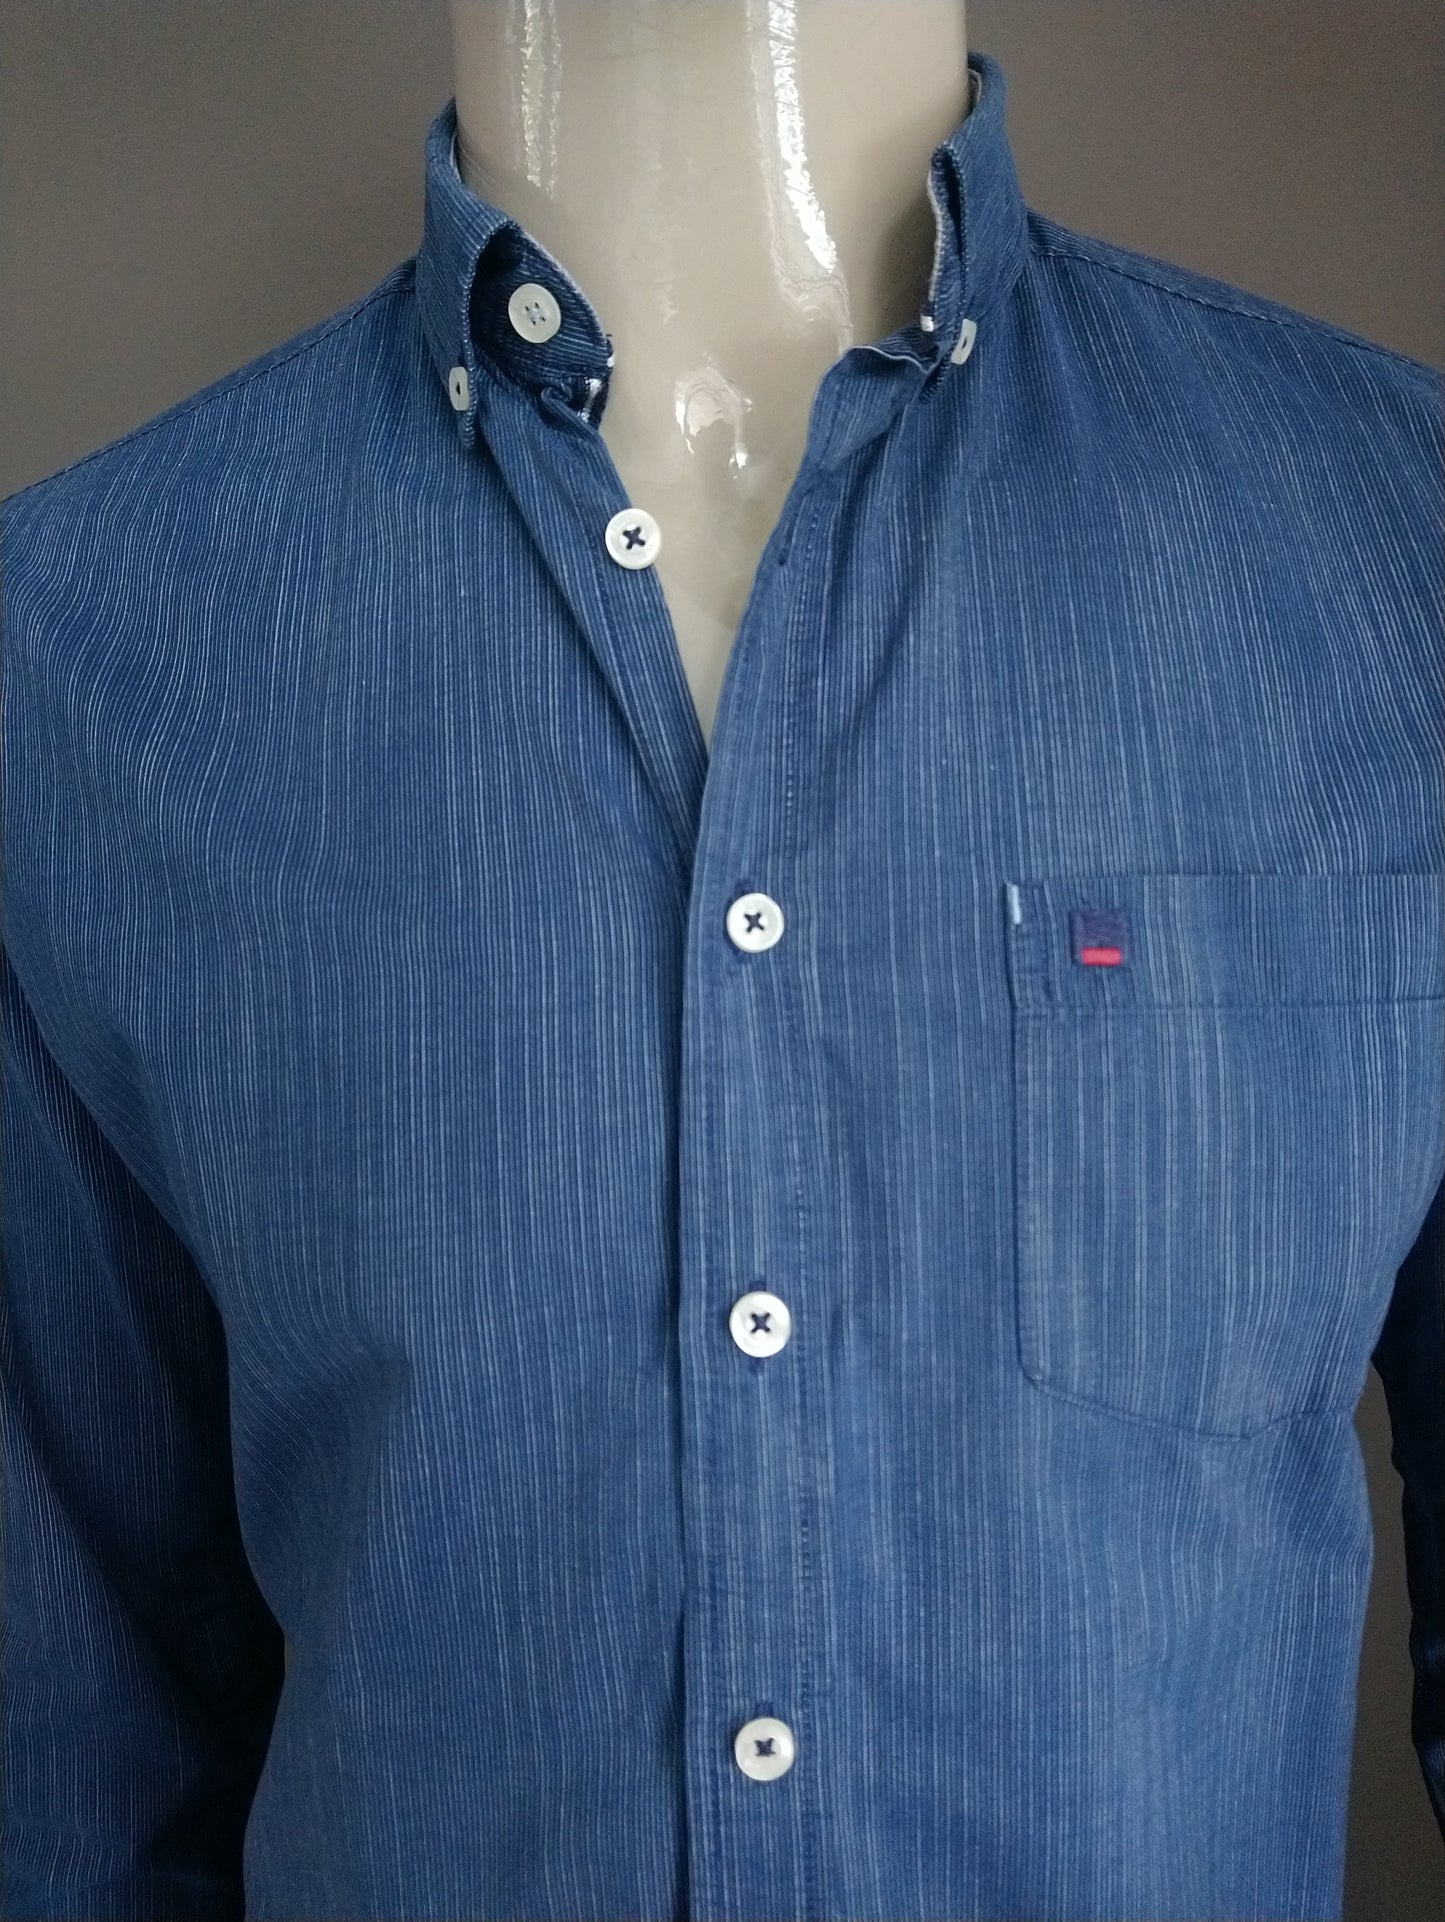 Bartlett shirt. Blue striped. Size M.